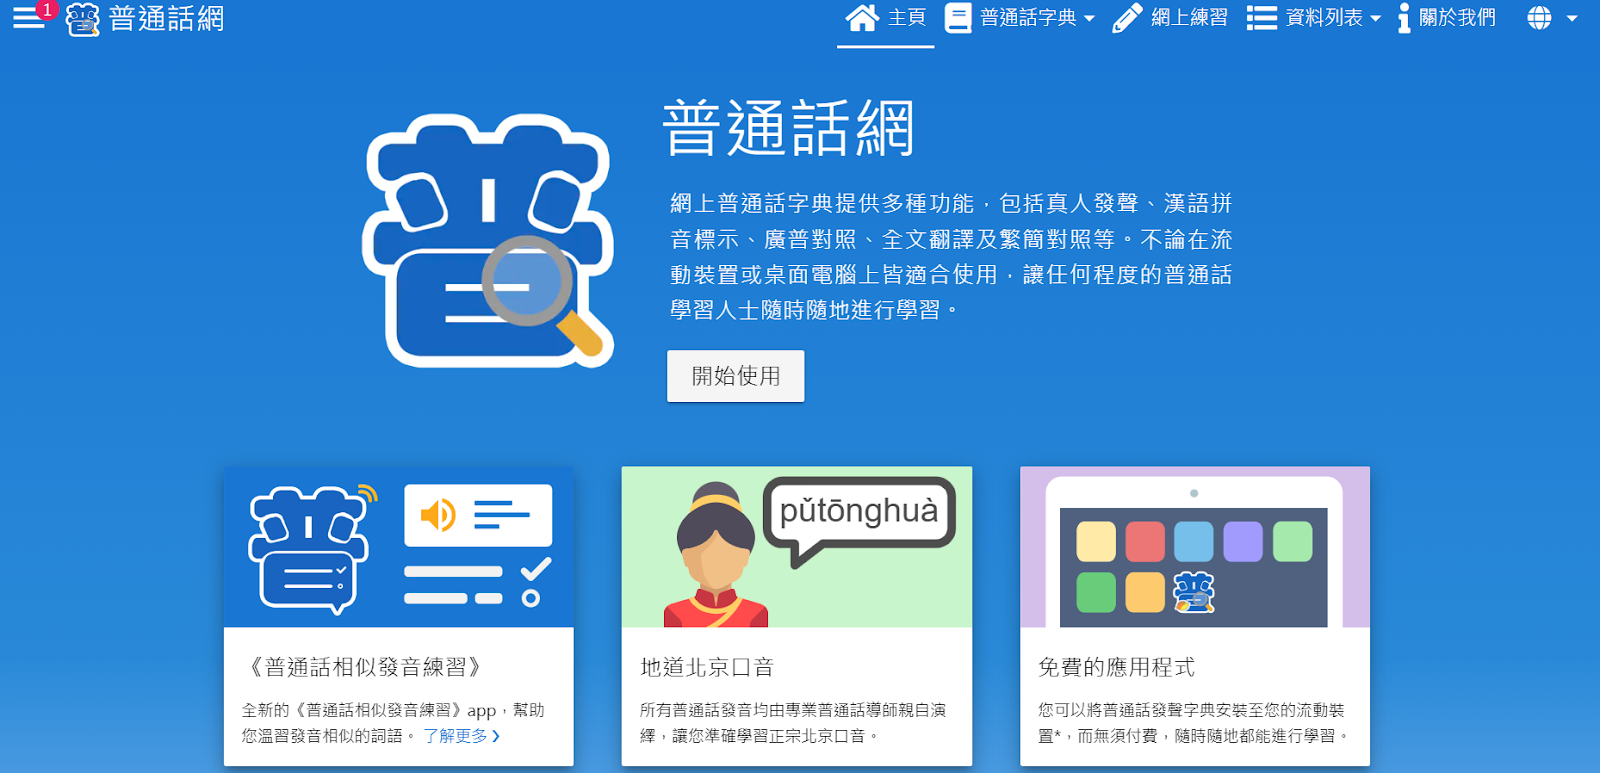 普通話網 線上學習網站 中文 中文學習 家長 學生 小孩 香港 學習 教育 網絡資源 學習資源